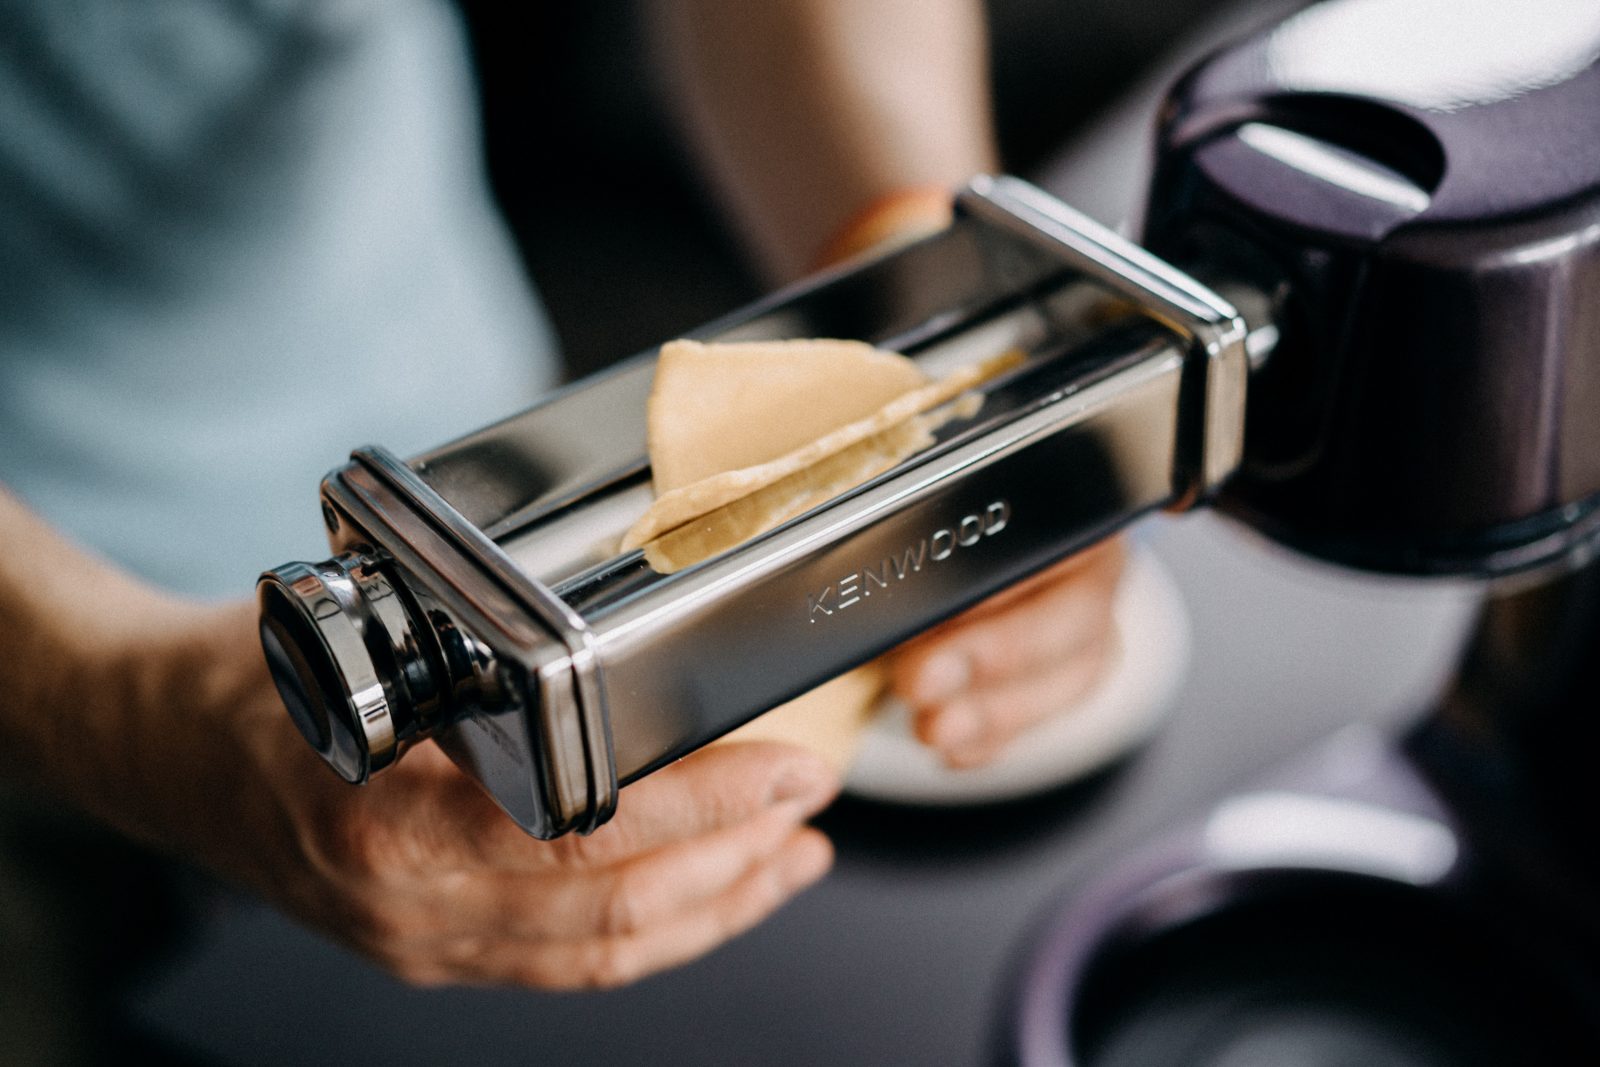 Kiss Cook 139 | Dass wir "deeply in love" mit den Kenwood Küchenmaschinen sind, ist für jeden, der uns schon länger begleitet, keine Überraschung. In einigen Rezepten haben wir schon viel über unsere Begeisterung und Leidenschaft erzählt. Da aber wahrscheinlich jeder ambitionierte Küchenakrobat irgendwann den Wunsch entwickelt, eine Küchenmaschine sein Eigen zu nennen, wollen wir heute darüber berichten, warum genau wir die Maschine so lieben - also ein kleiner Kaufratgeber und Erfahrungsbericht. Und außerdem findet ihr auch am Ende eine Rezeptesammlung all unserer Rezepte, viele auch speziell für die Kenwood Cooking Chef!